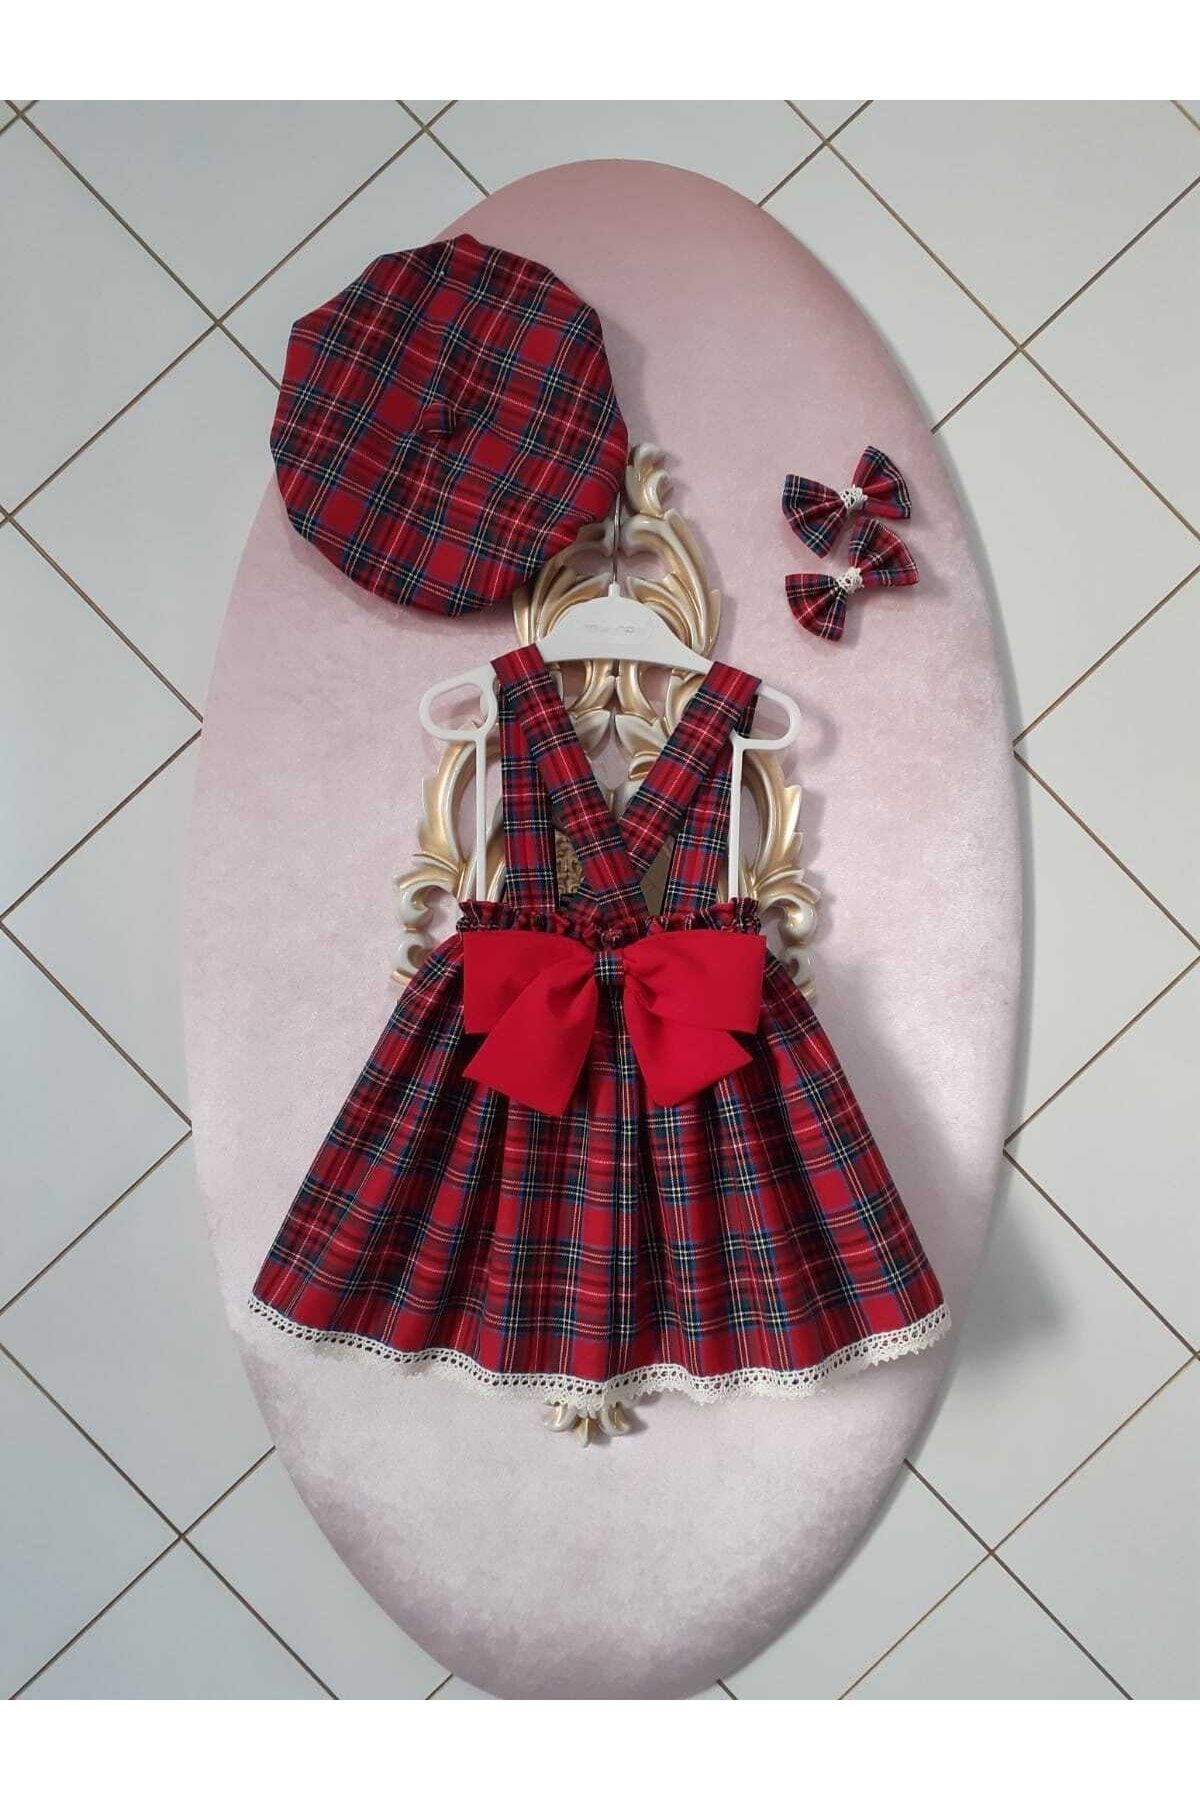 Eylülce Butik Kız Bebek & Çocuk Ekoseli Salopet Elbise & Şapka & Toka Takım